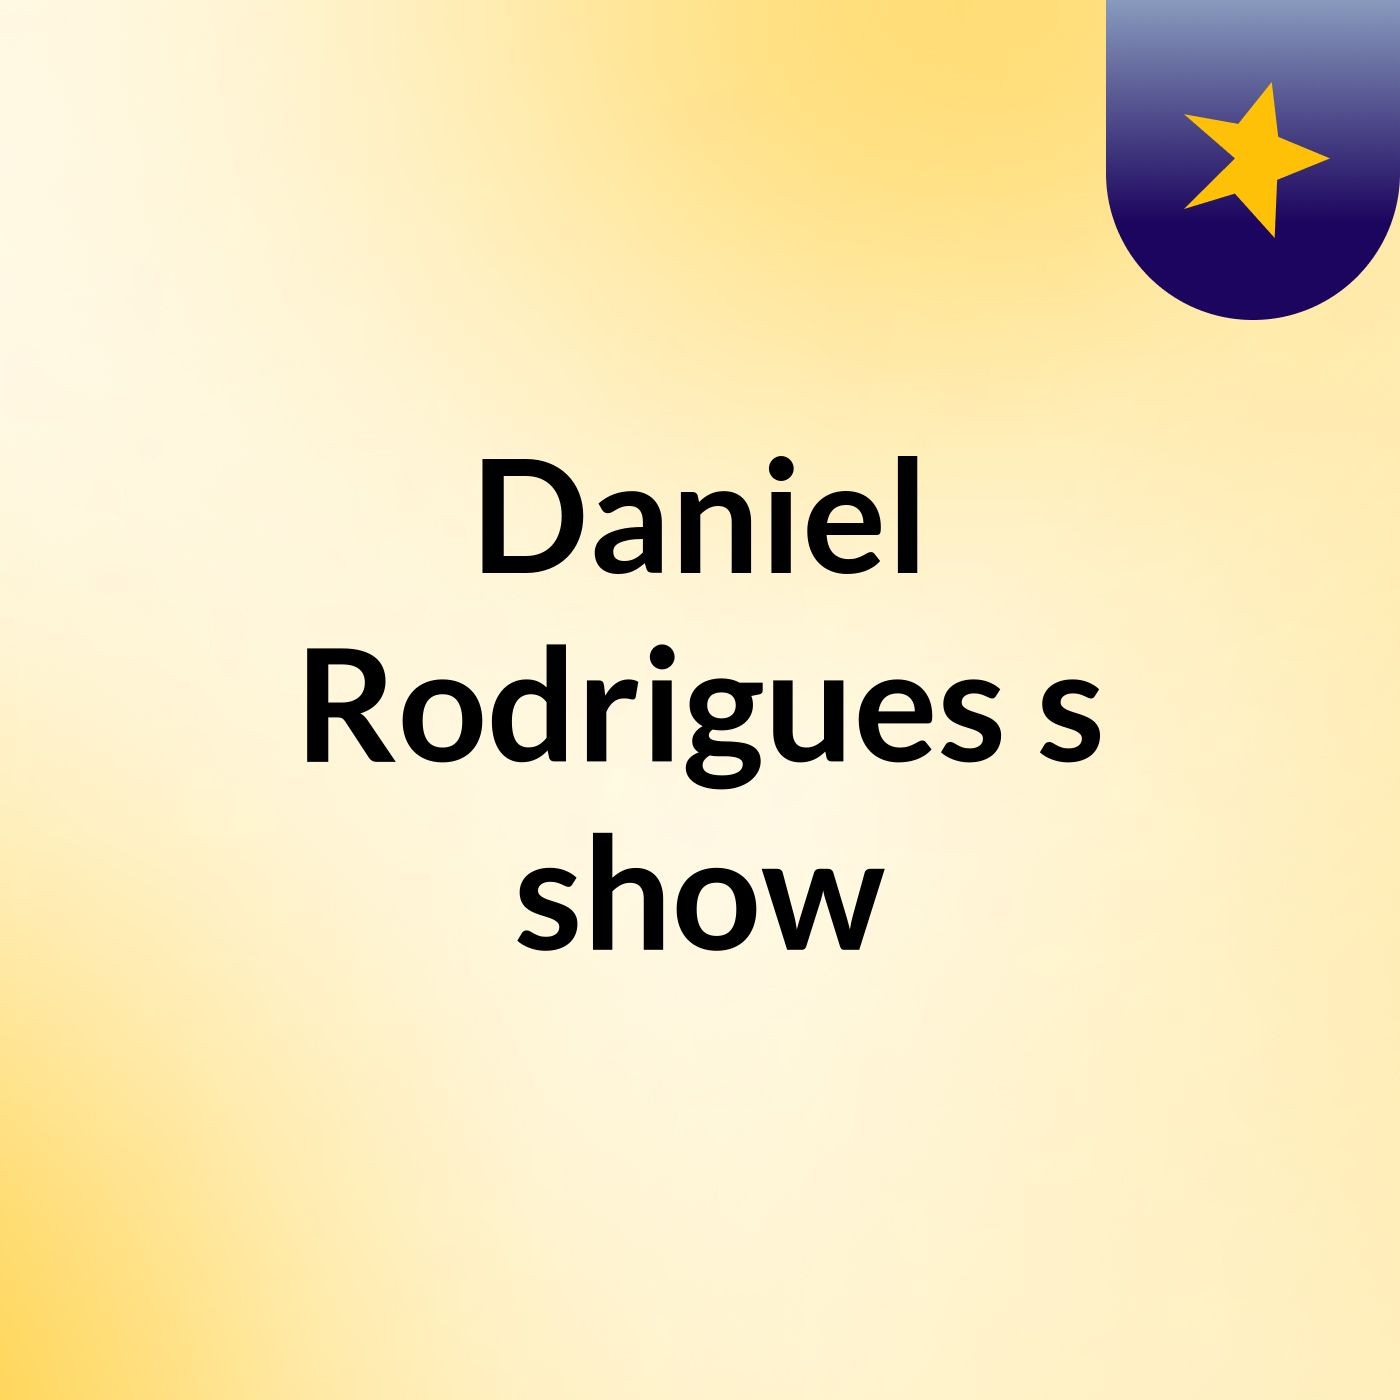 Daniel Rodrigues's show